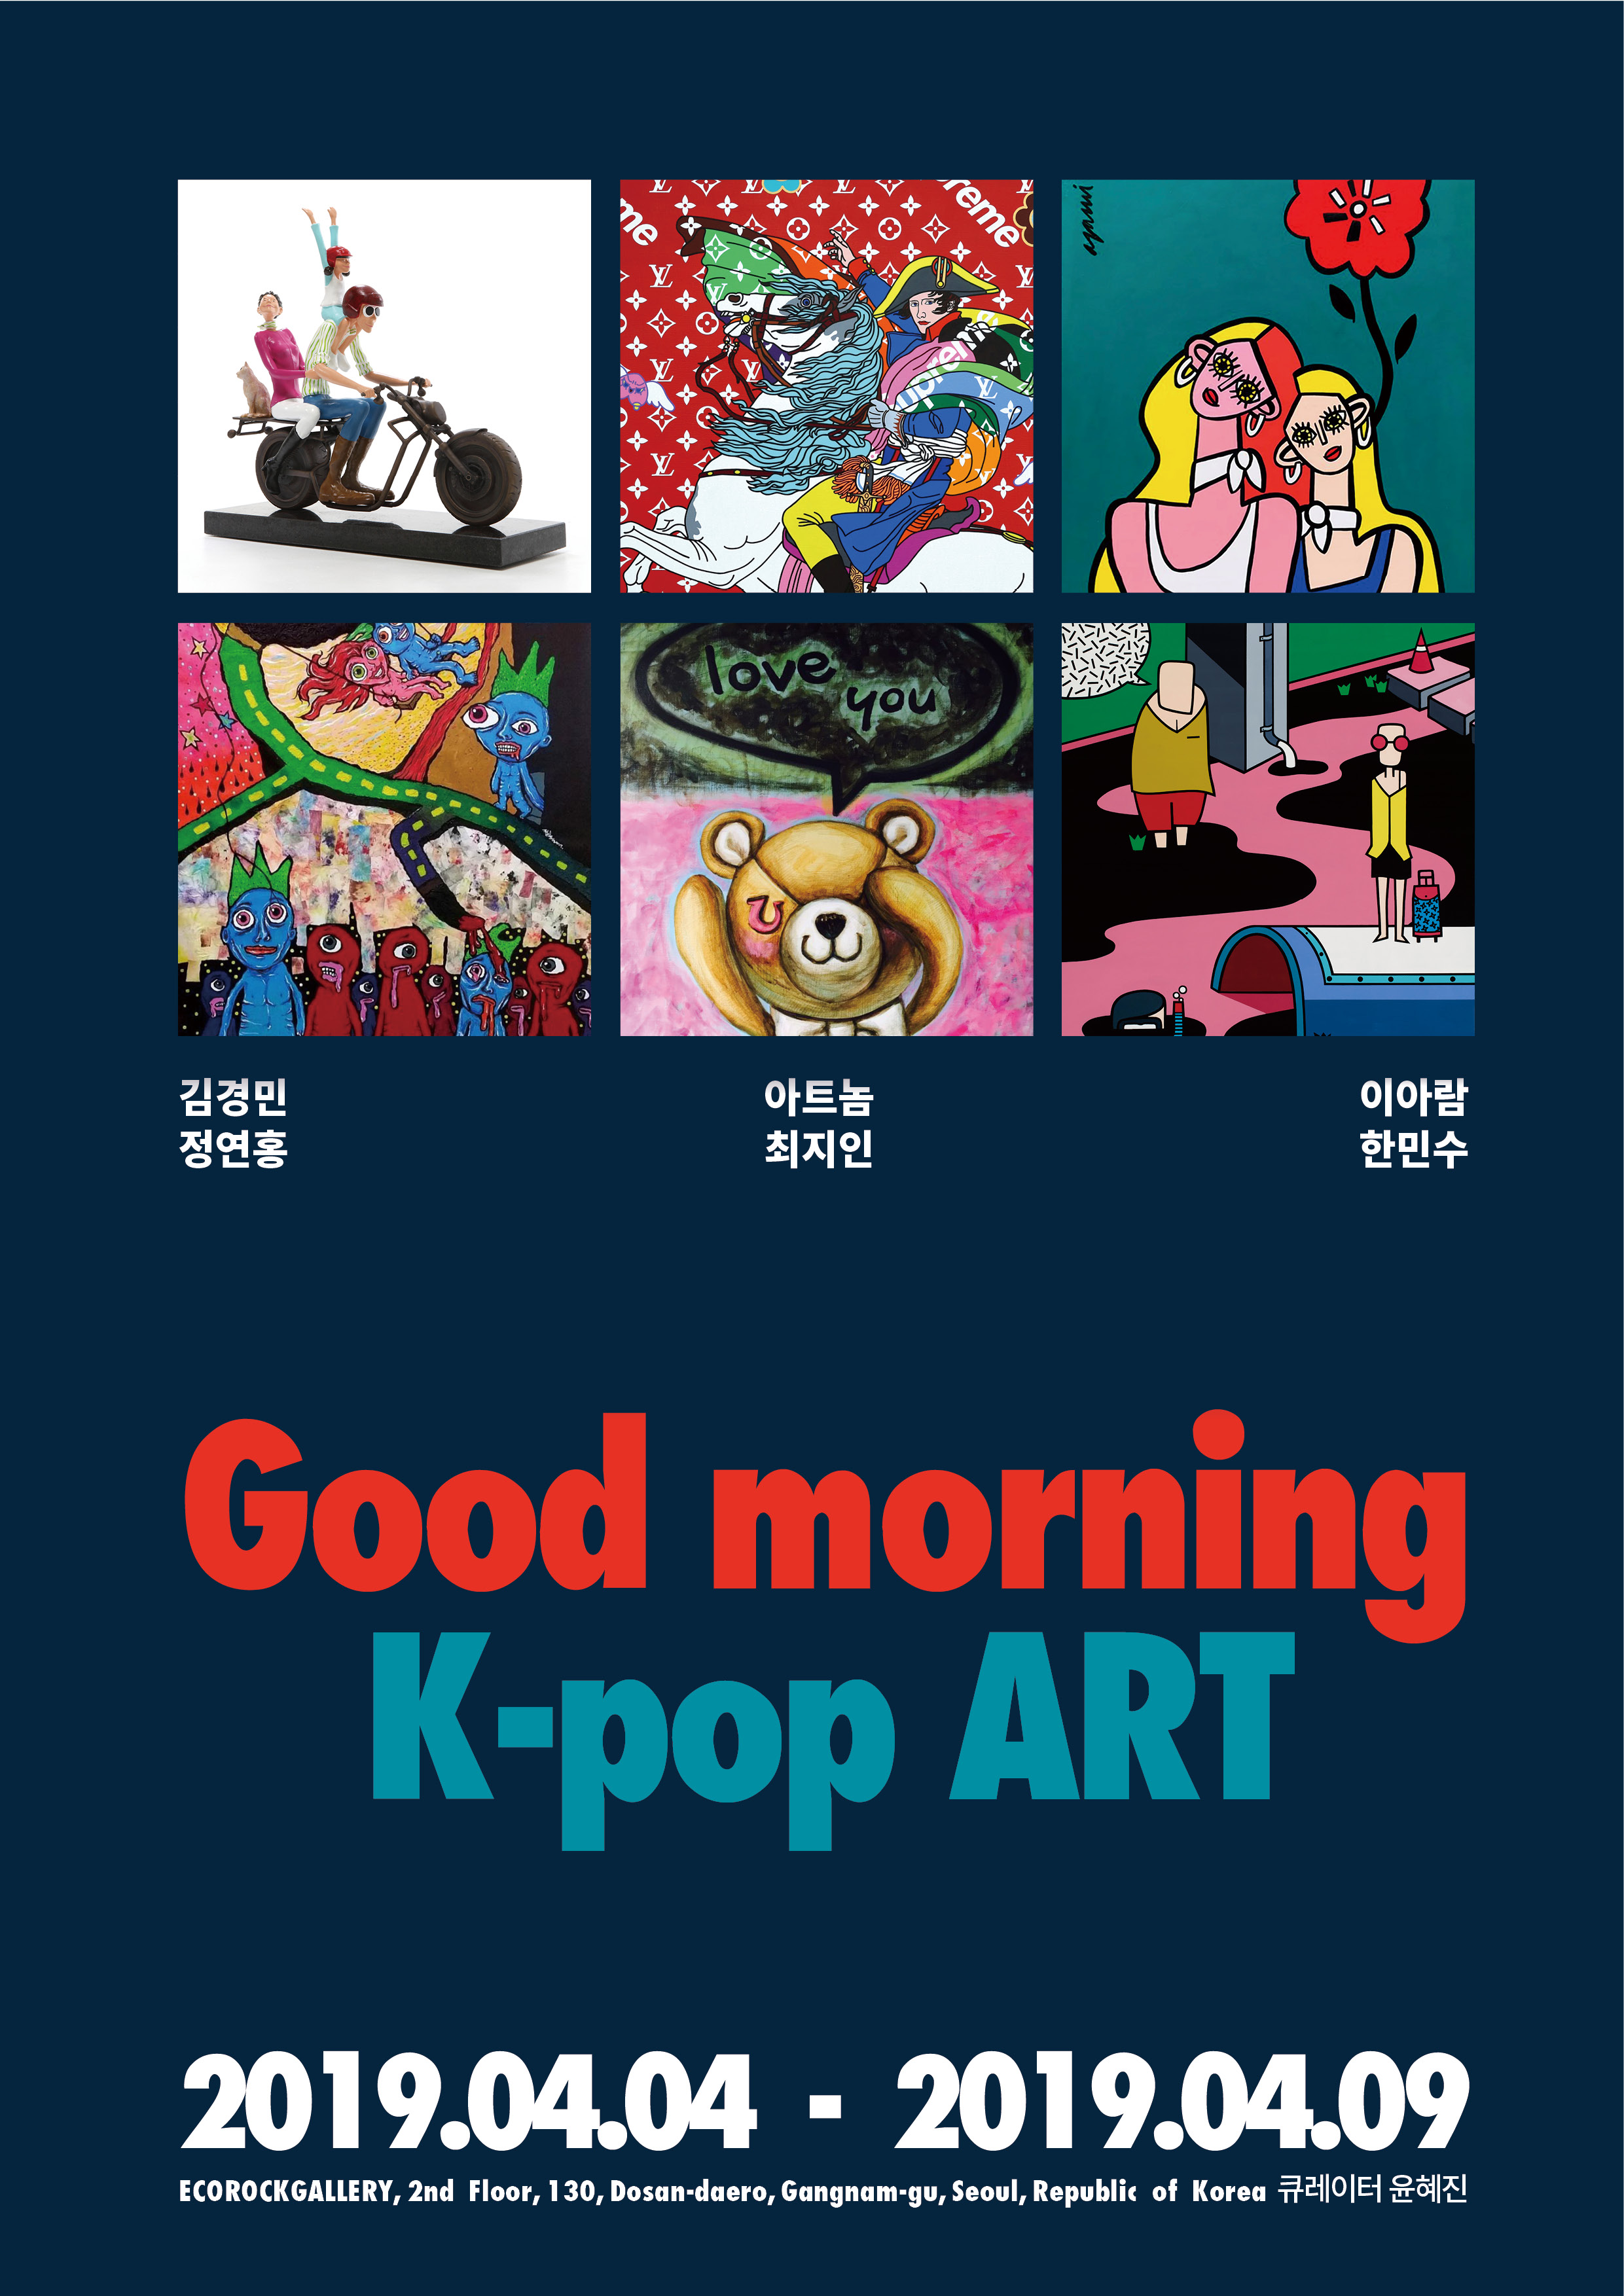 제 1회 팝아트展 : Good morning K-popart